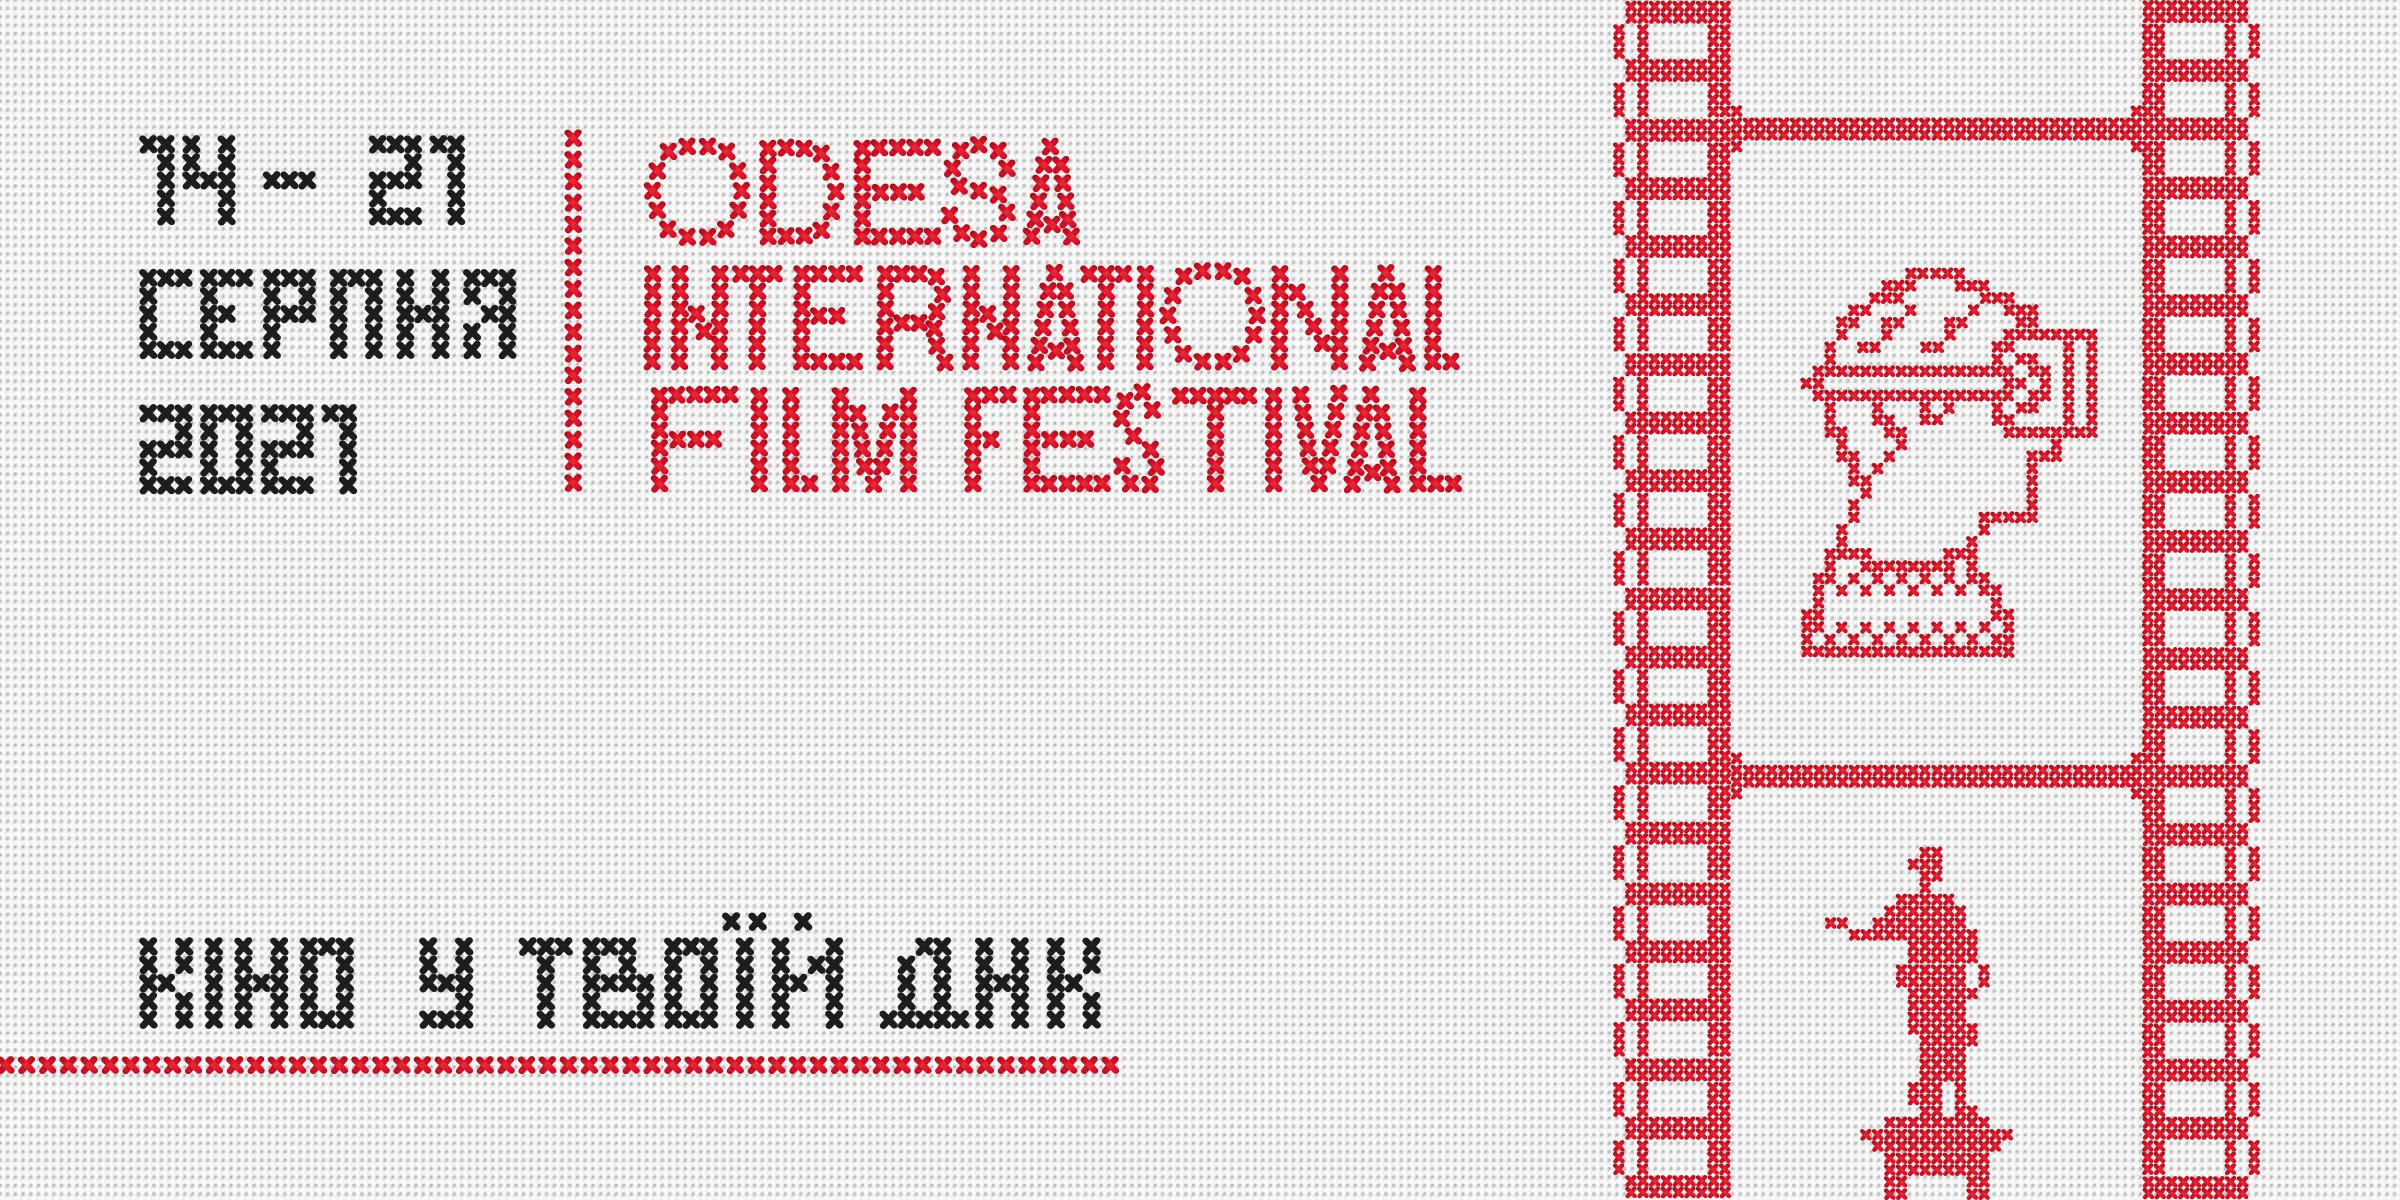 12-й Одеський міжнародний кінофестиваль представляє офіційний постер фестивалю